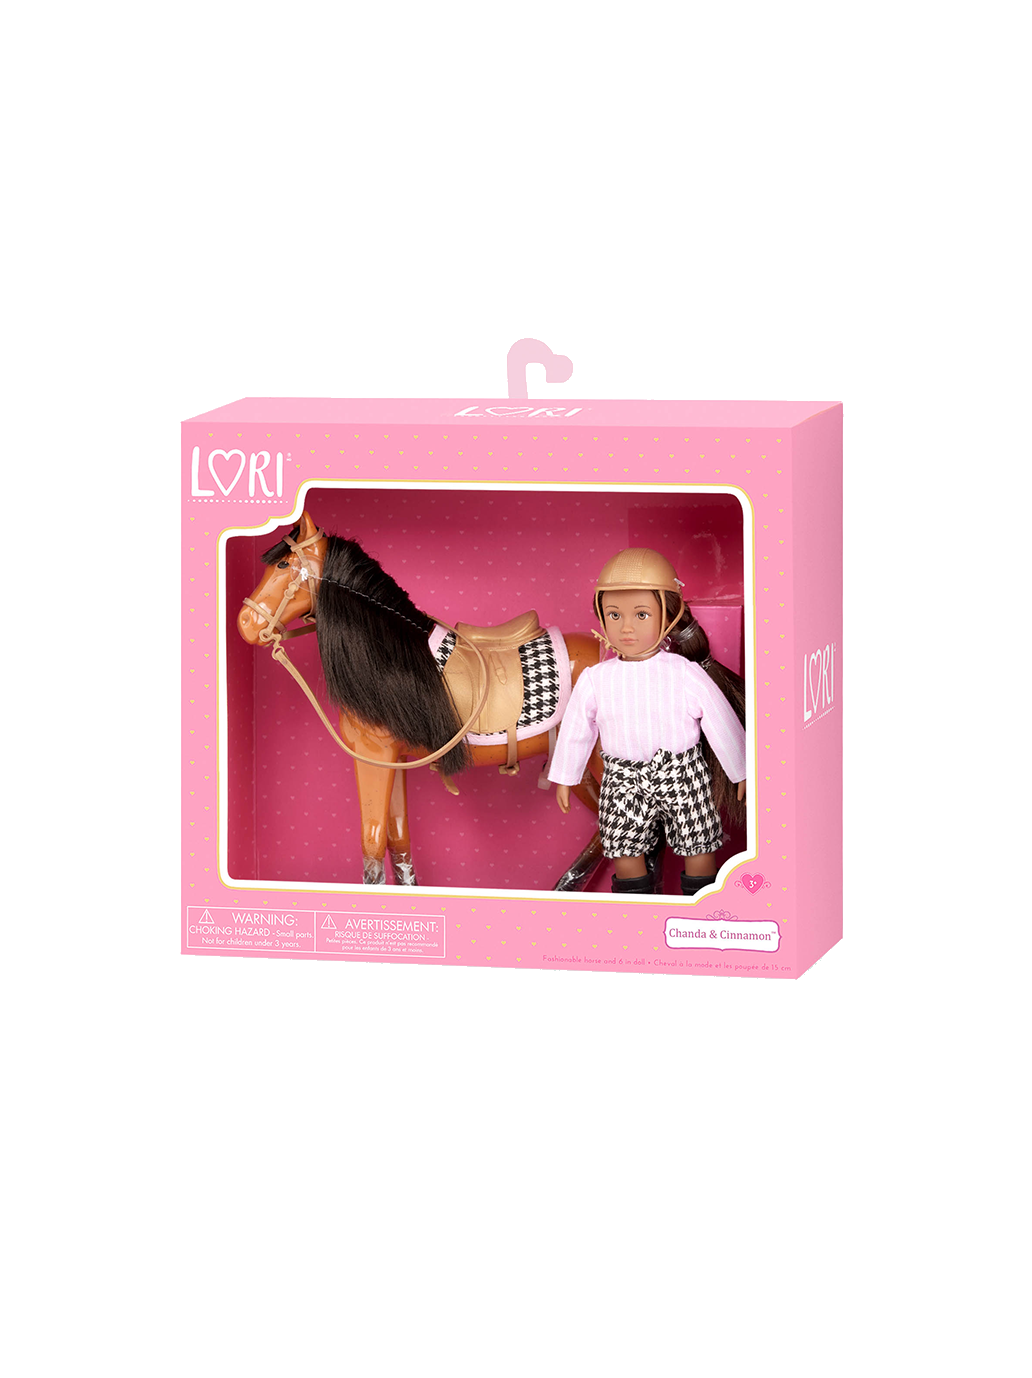 Une petite poupée jockey avec un cheval